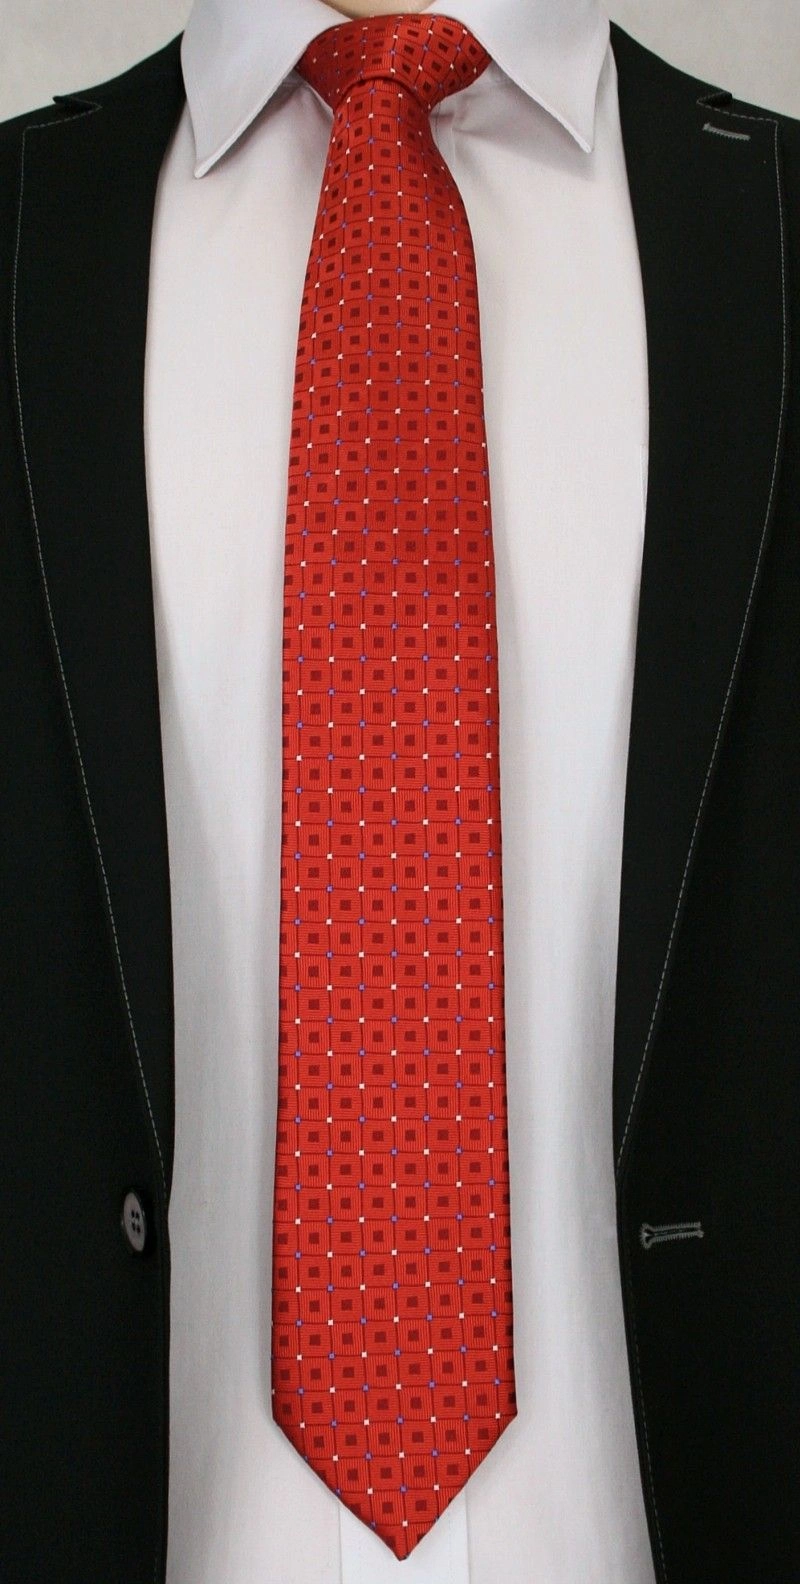 Jaskrawy, Męski Krawat w Oryginalny Wzór- Chattier - 6,7 cm - Pomarańczowy